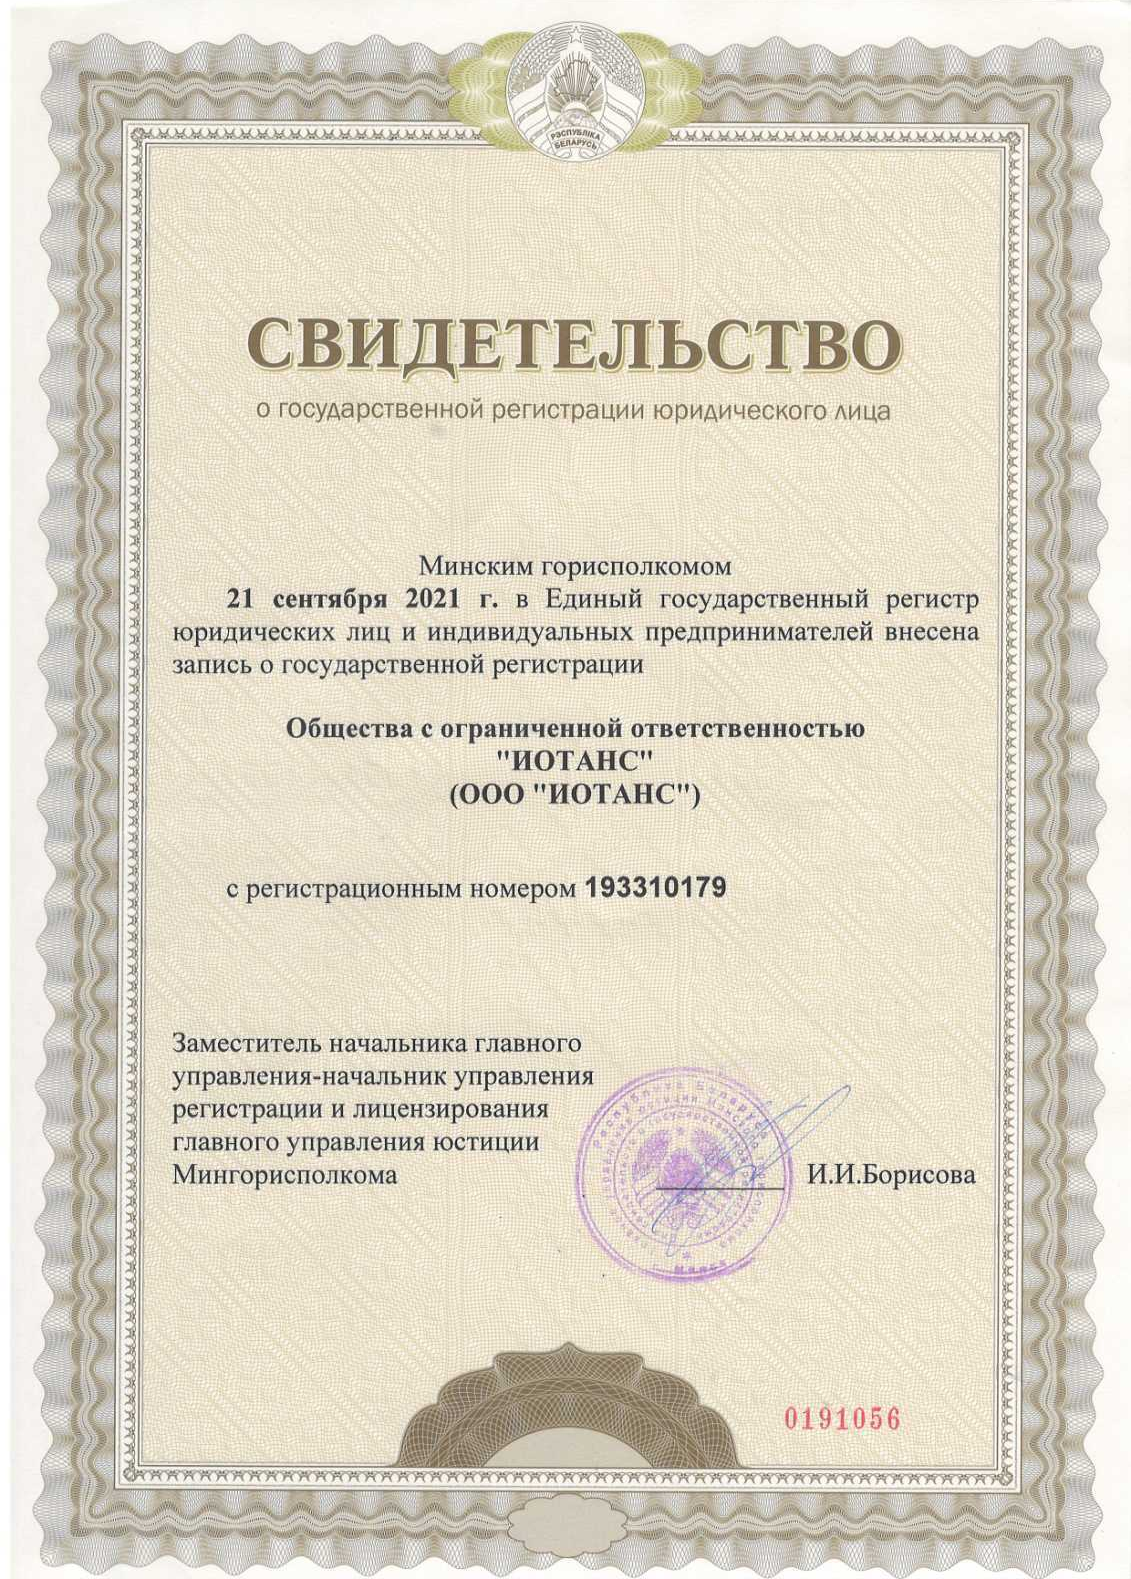 Сертифікат про реєстрацію юридичної особи